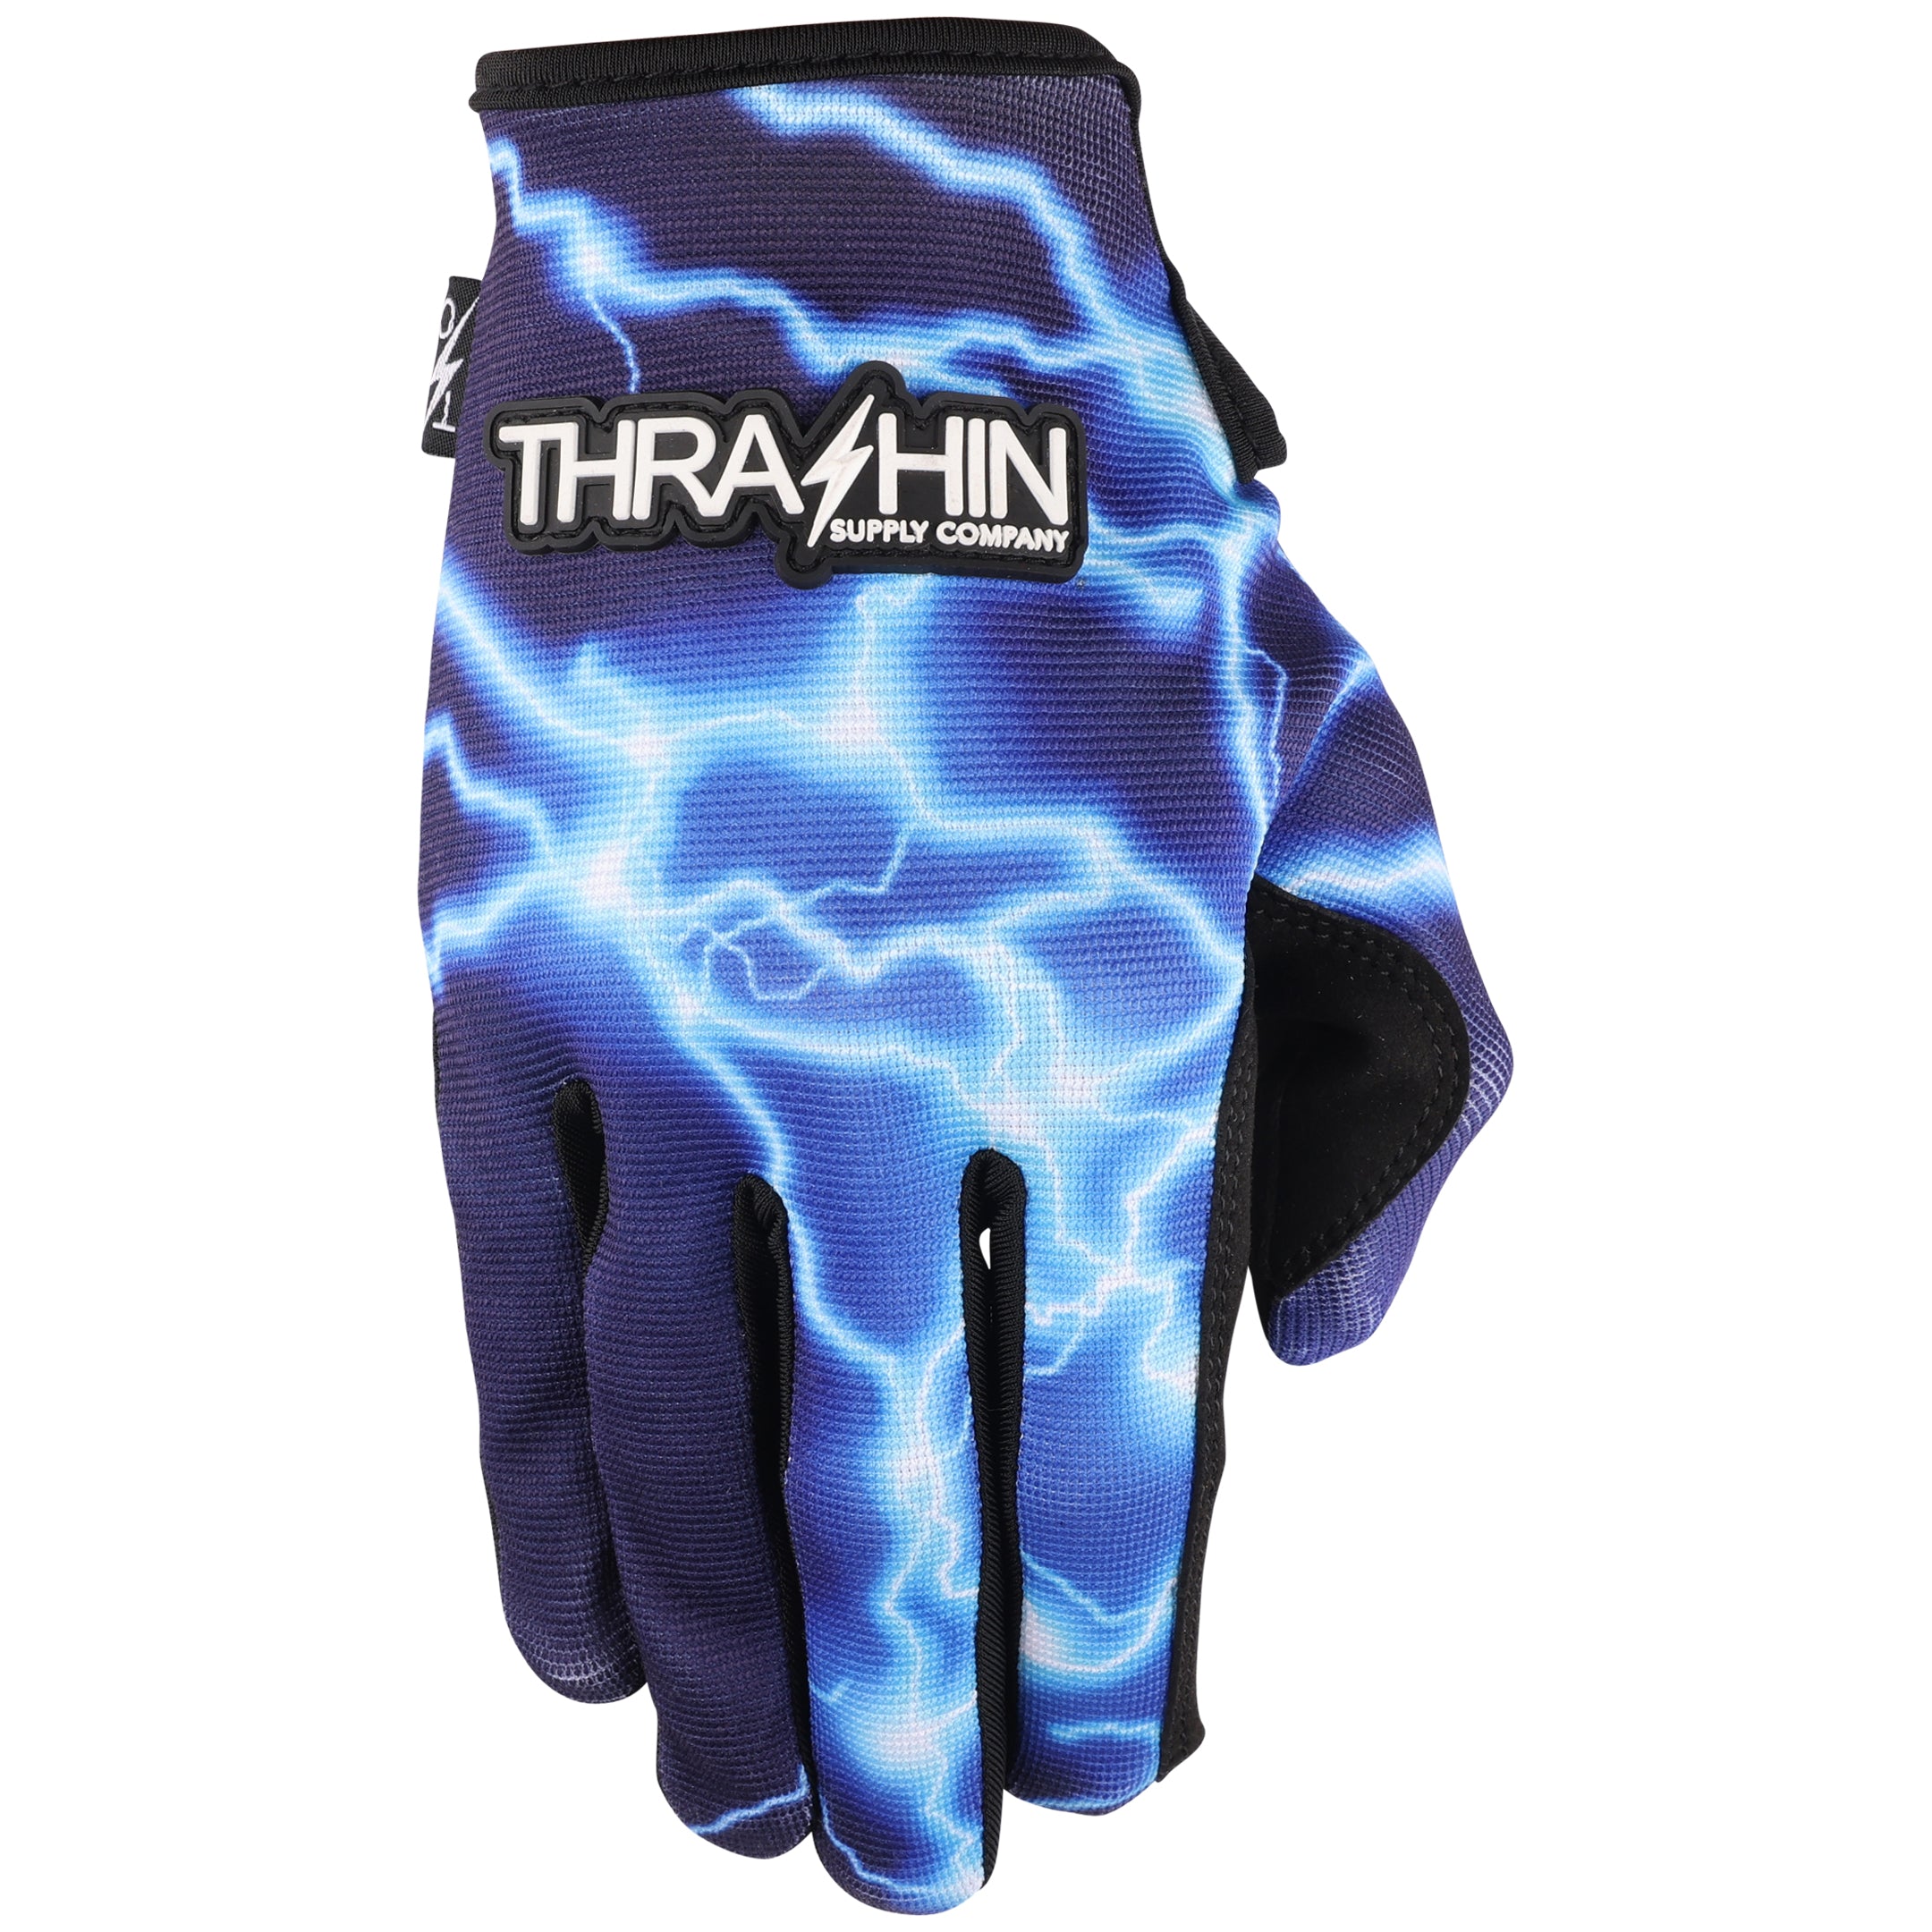 Covert - Tactical Tan – Thrashin Supply